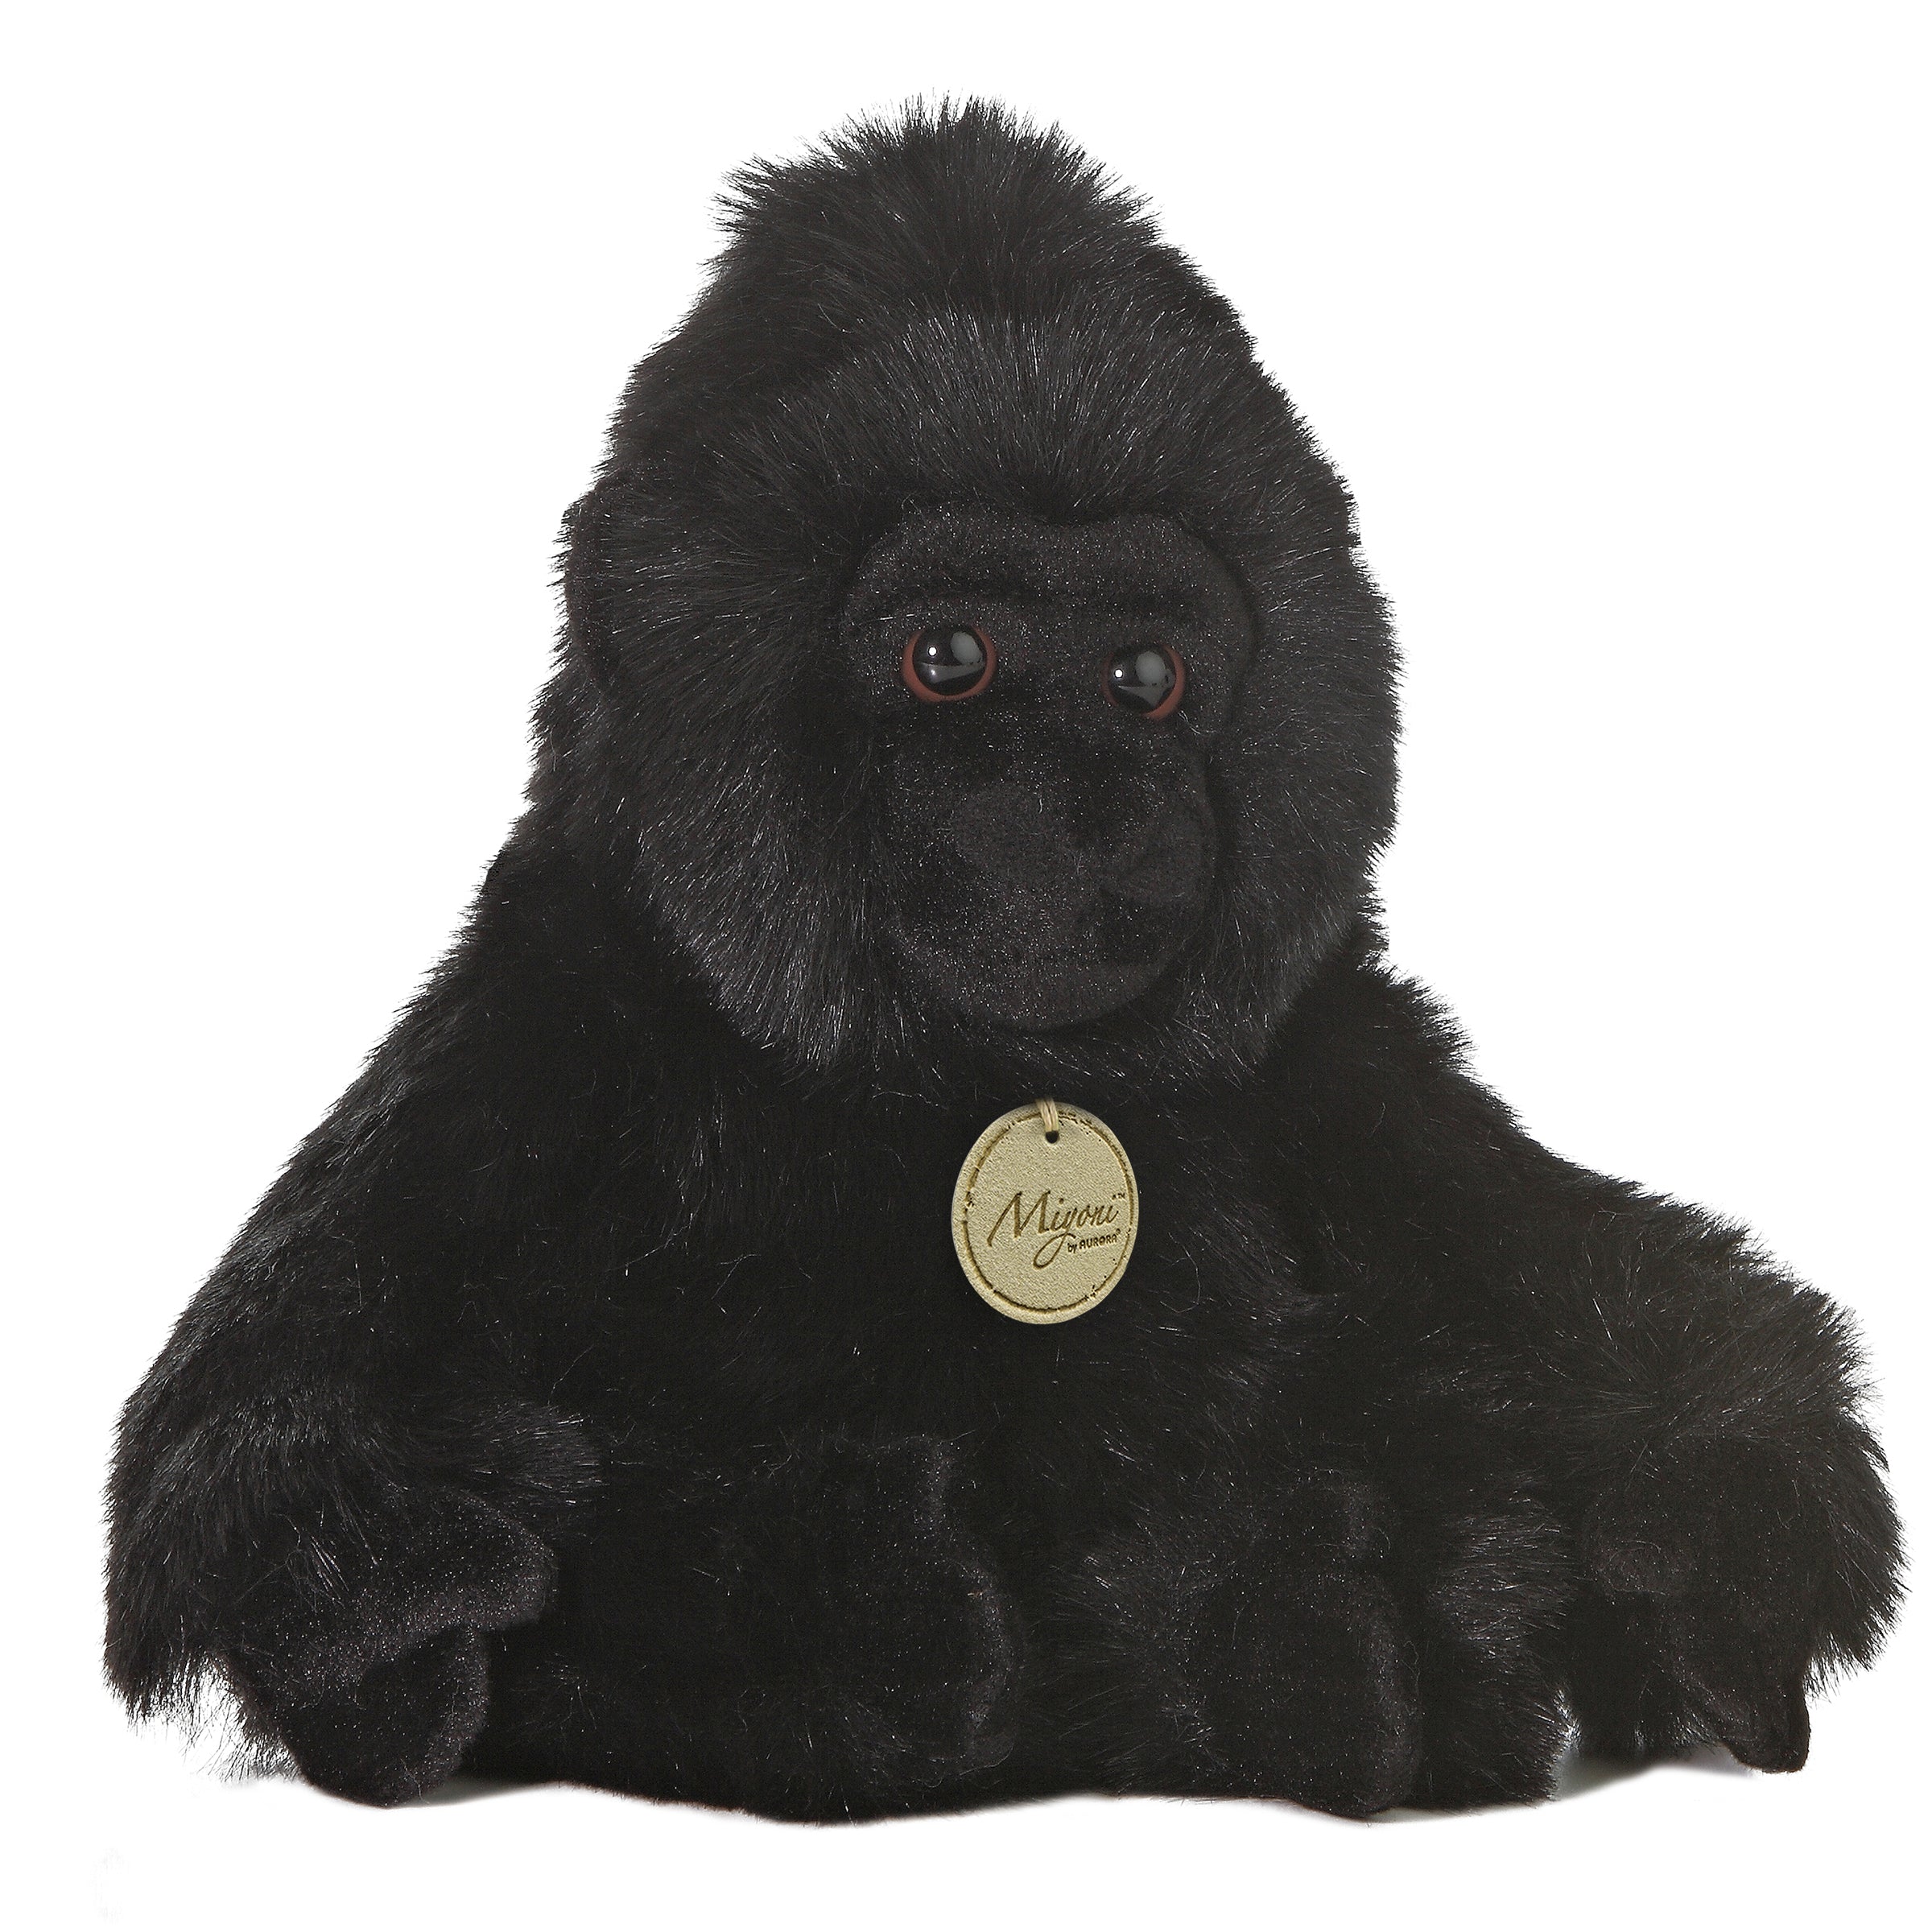 big stuffed gorilla